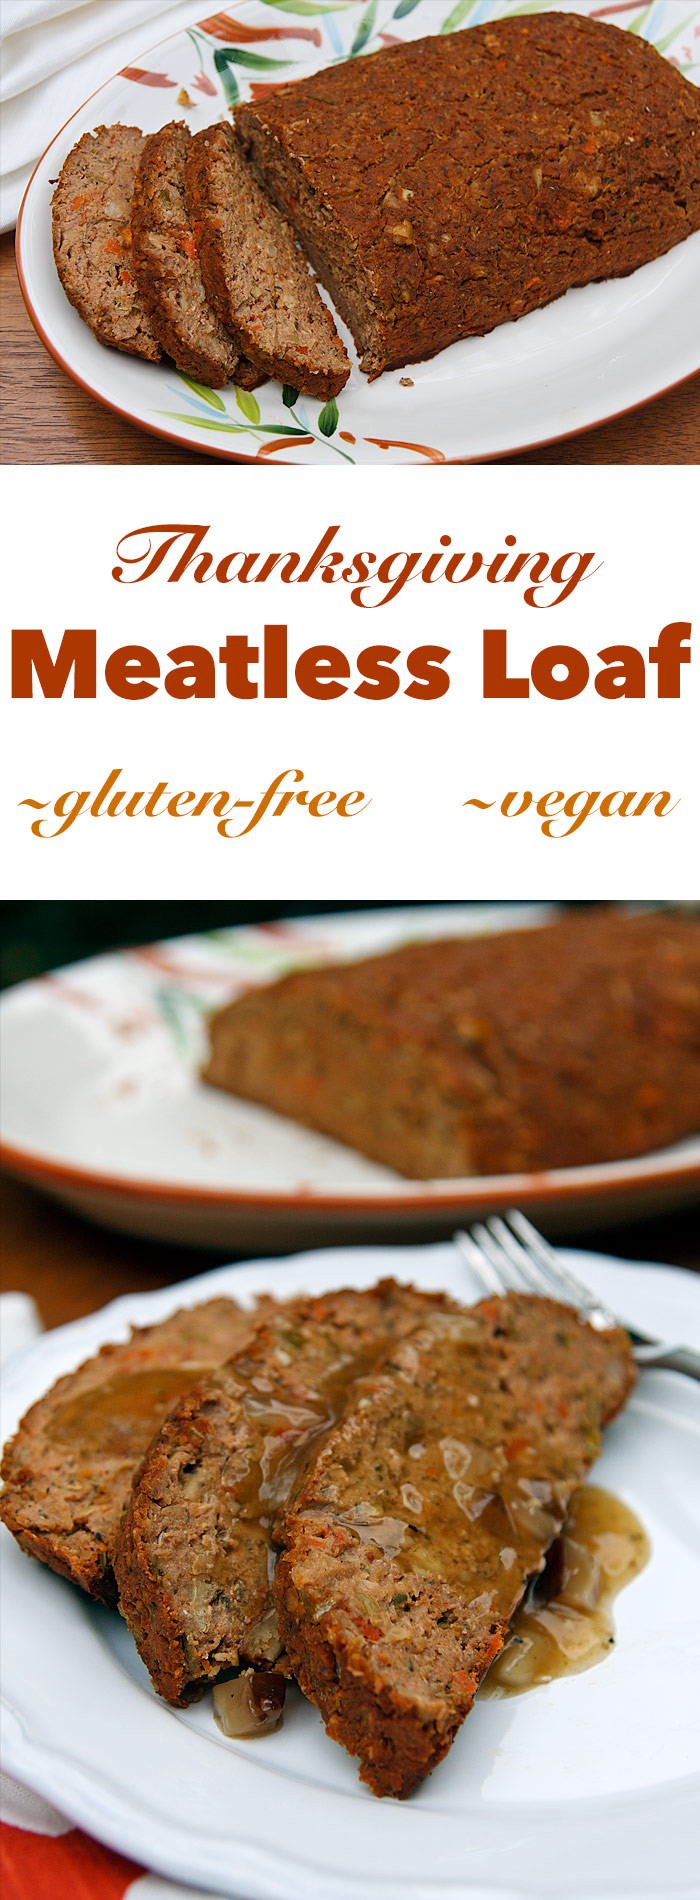 Vegan Thanksgiving Loaf
 Thanksgiving Meatless Loaf